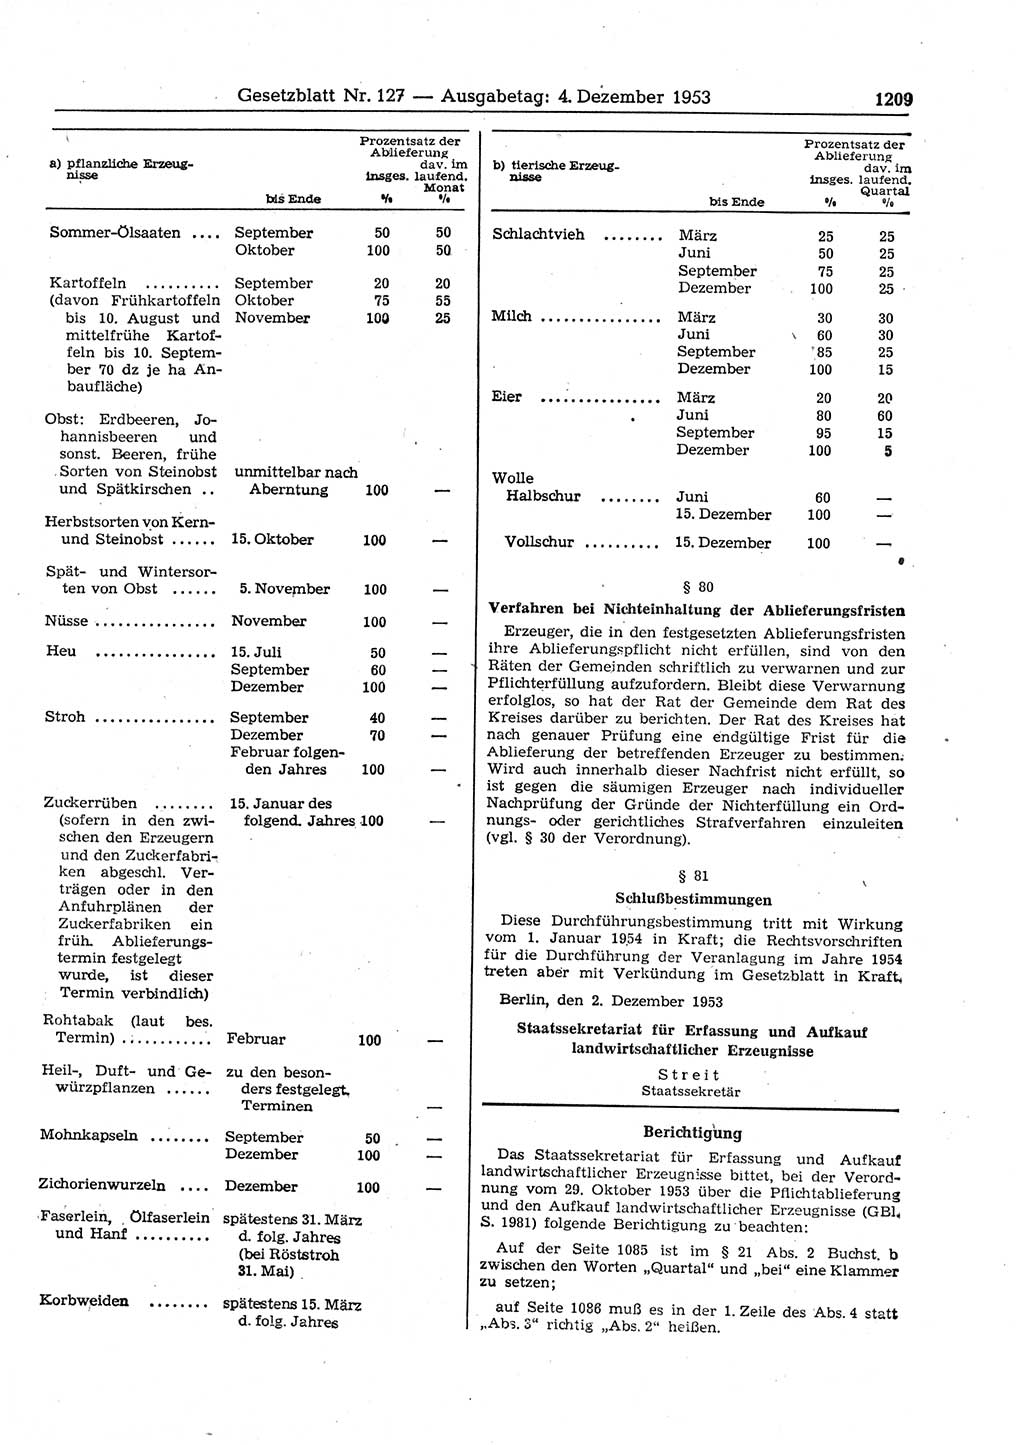 Gesetzblatt (GBl.) der Deutschen Demokratischen Republik (DDR) 1953, Seite 1209 (GBl. DDR 1953, S. 1209)